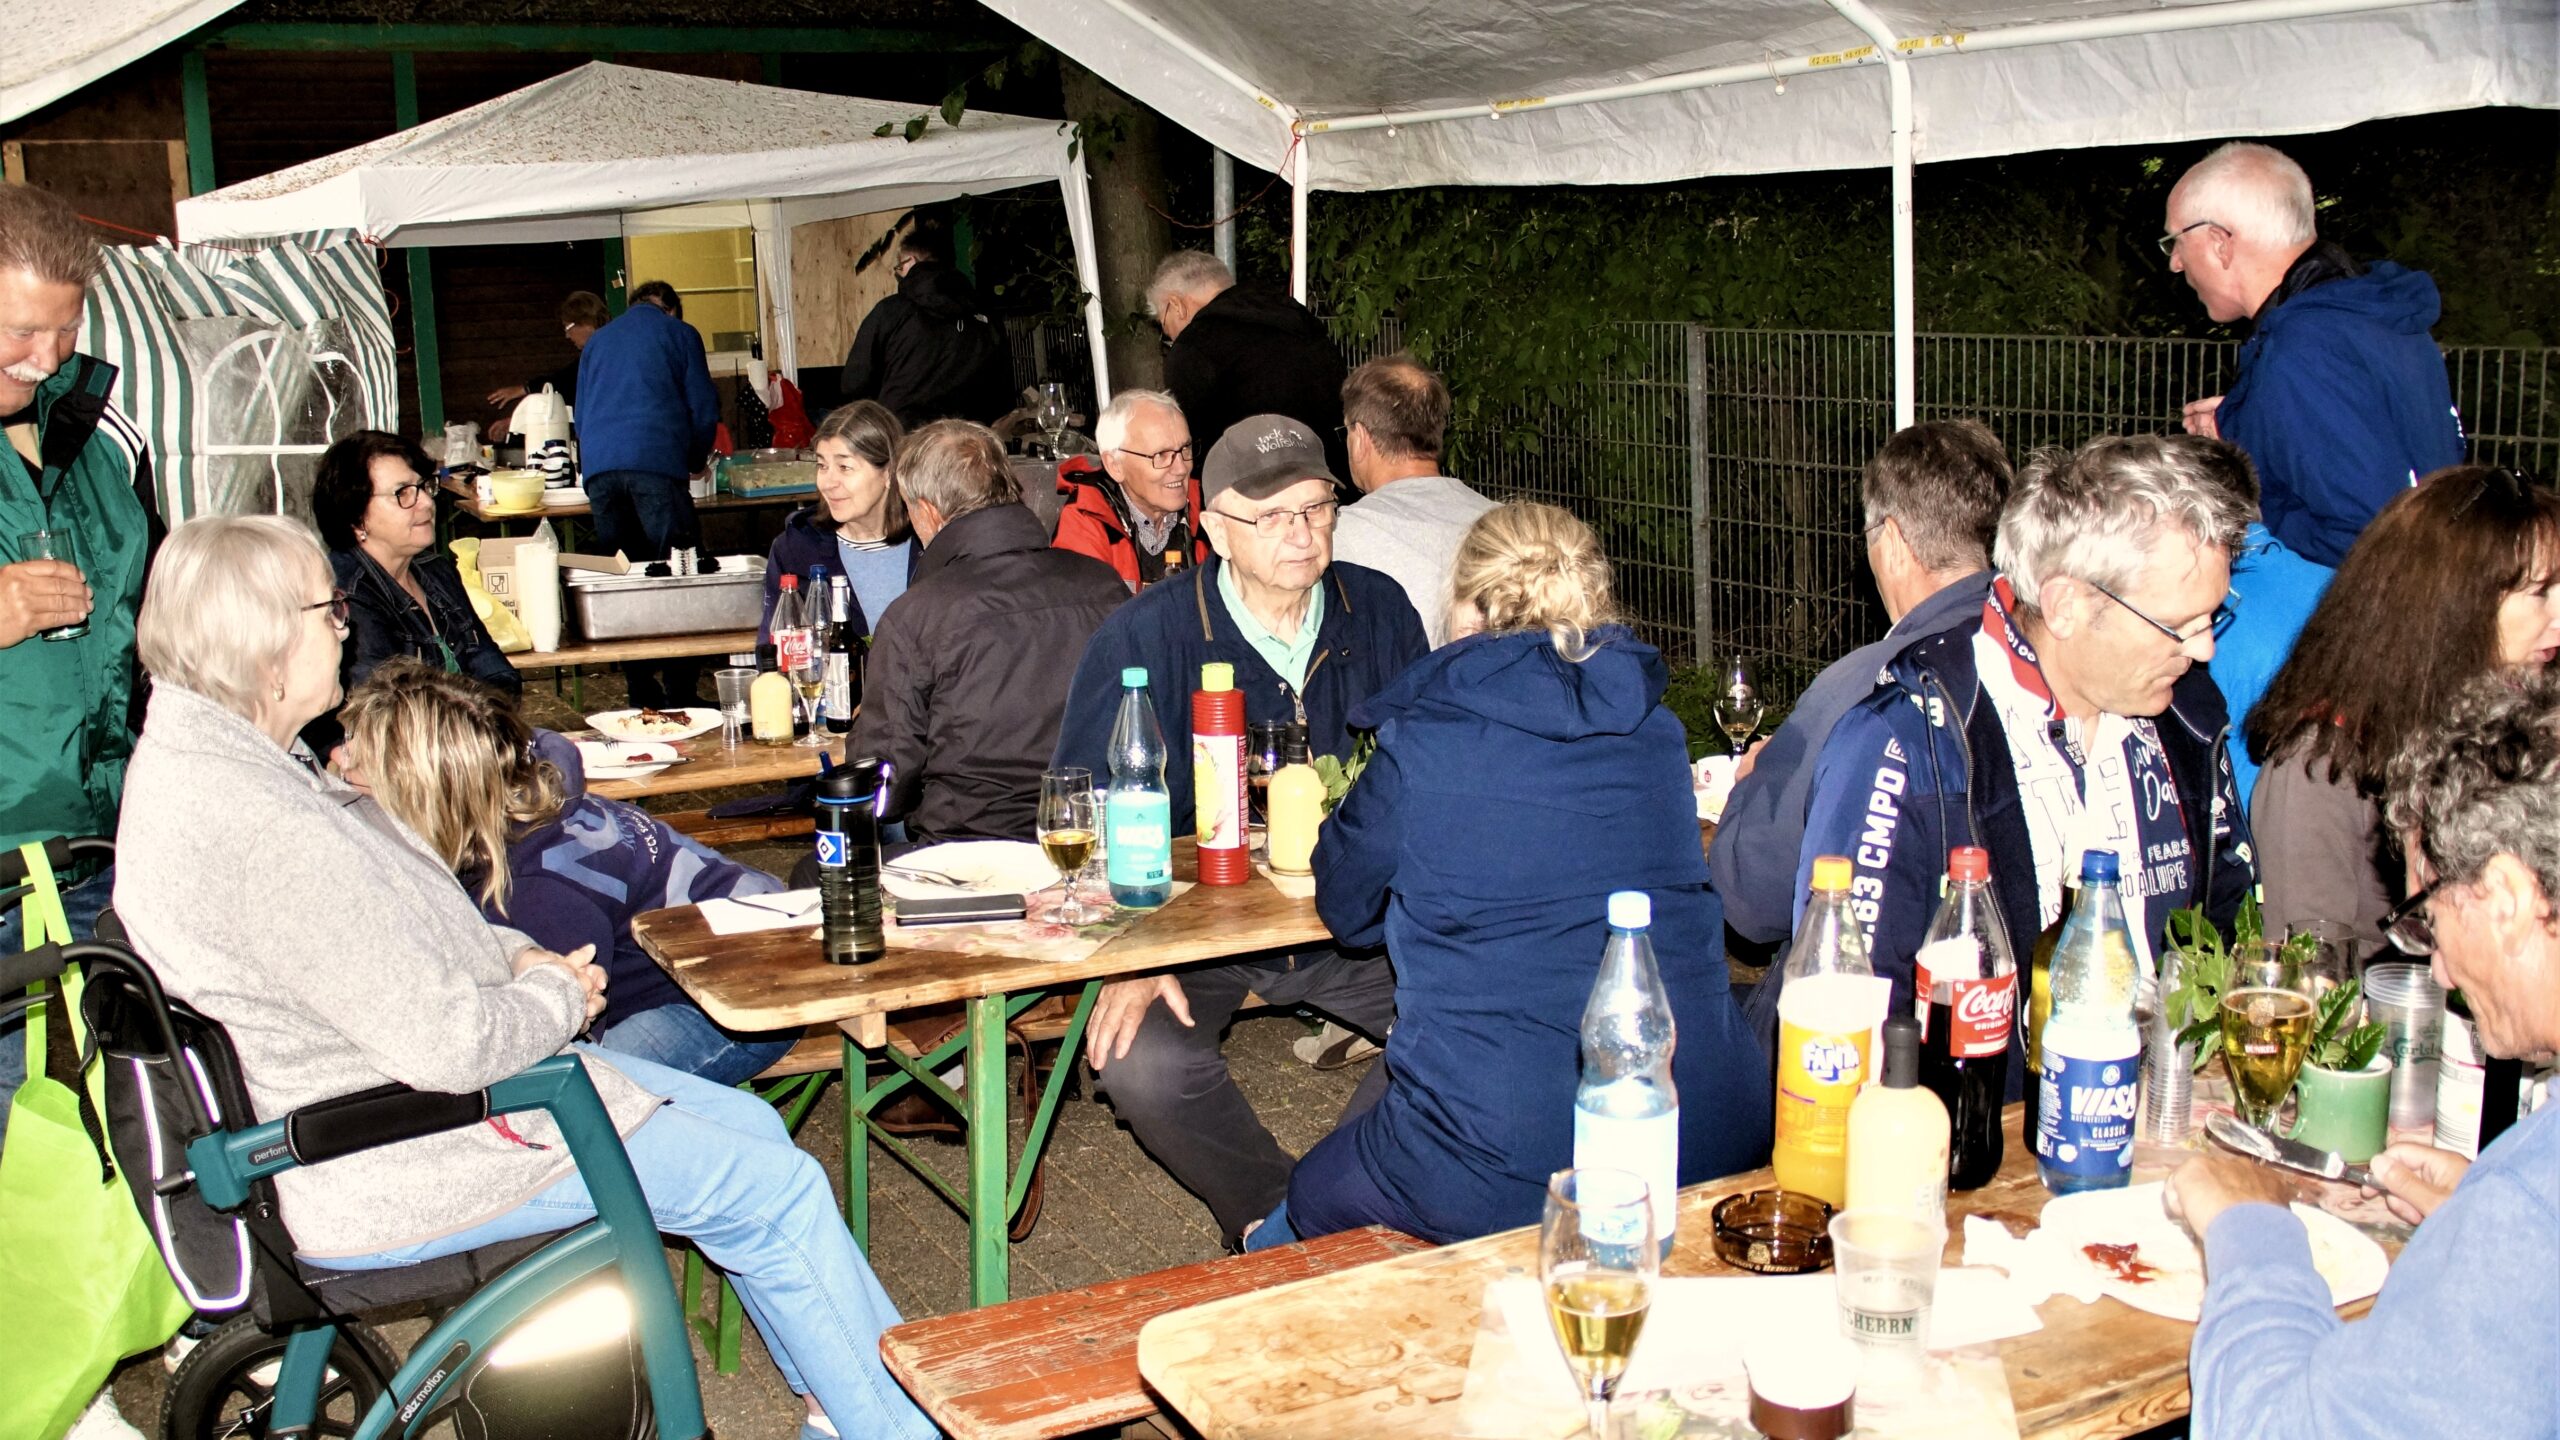 Saison-Auftaktfeier der Super-Senioren vom TuS Finkenwerder: die Gruppe sitzt unter Pavillons in gemütlicher Runde